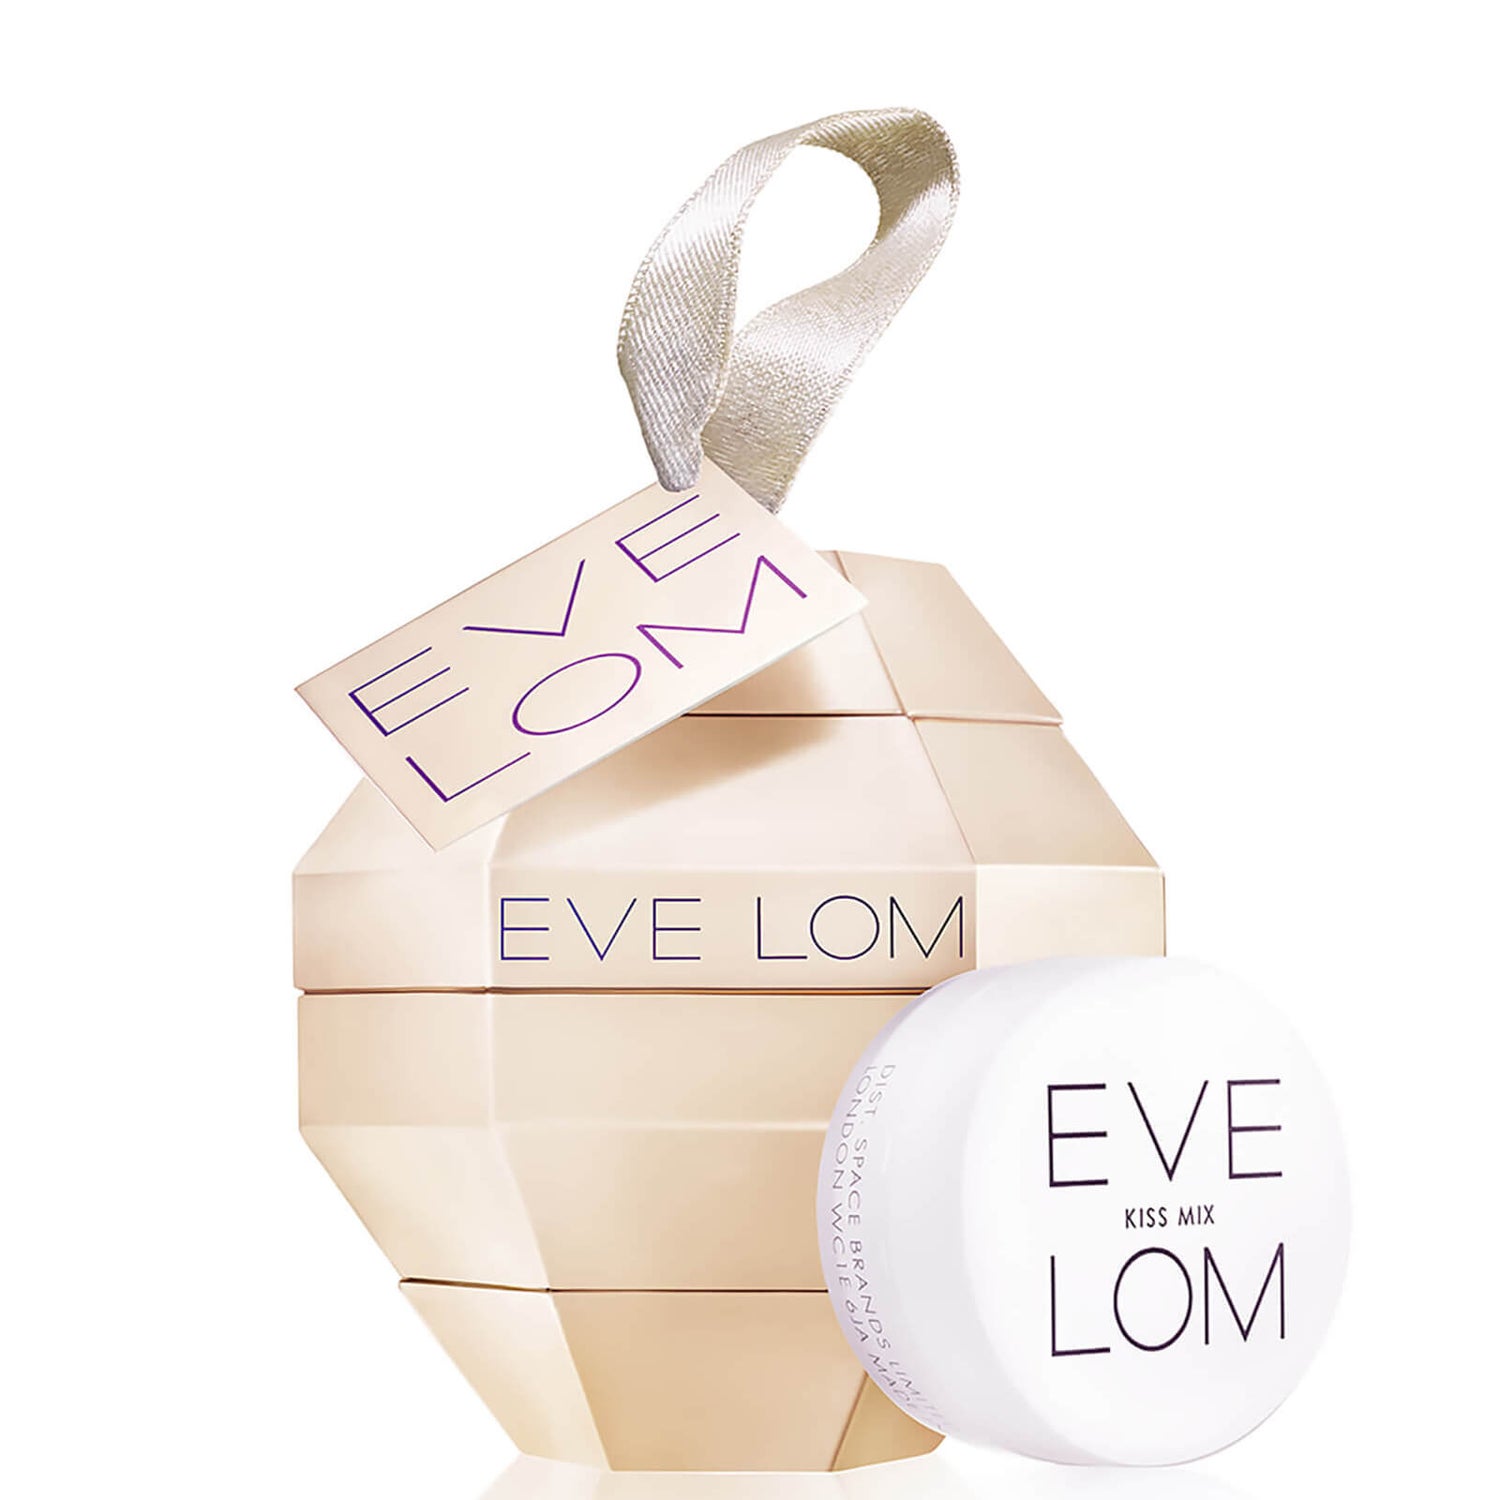 Eve Lom Kiss Mix Disco Ball